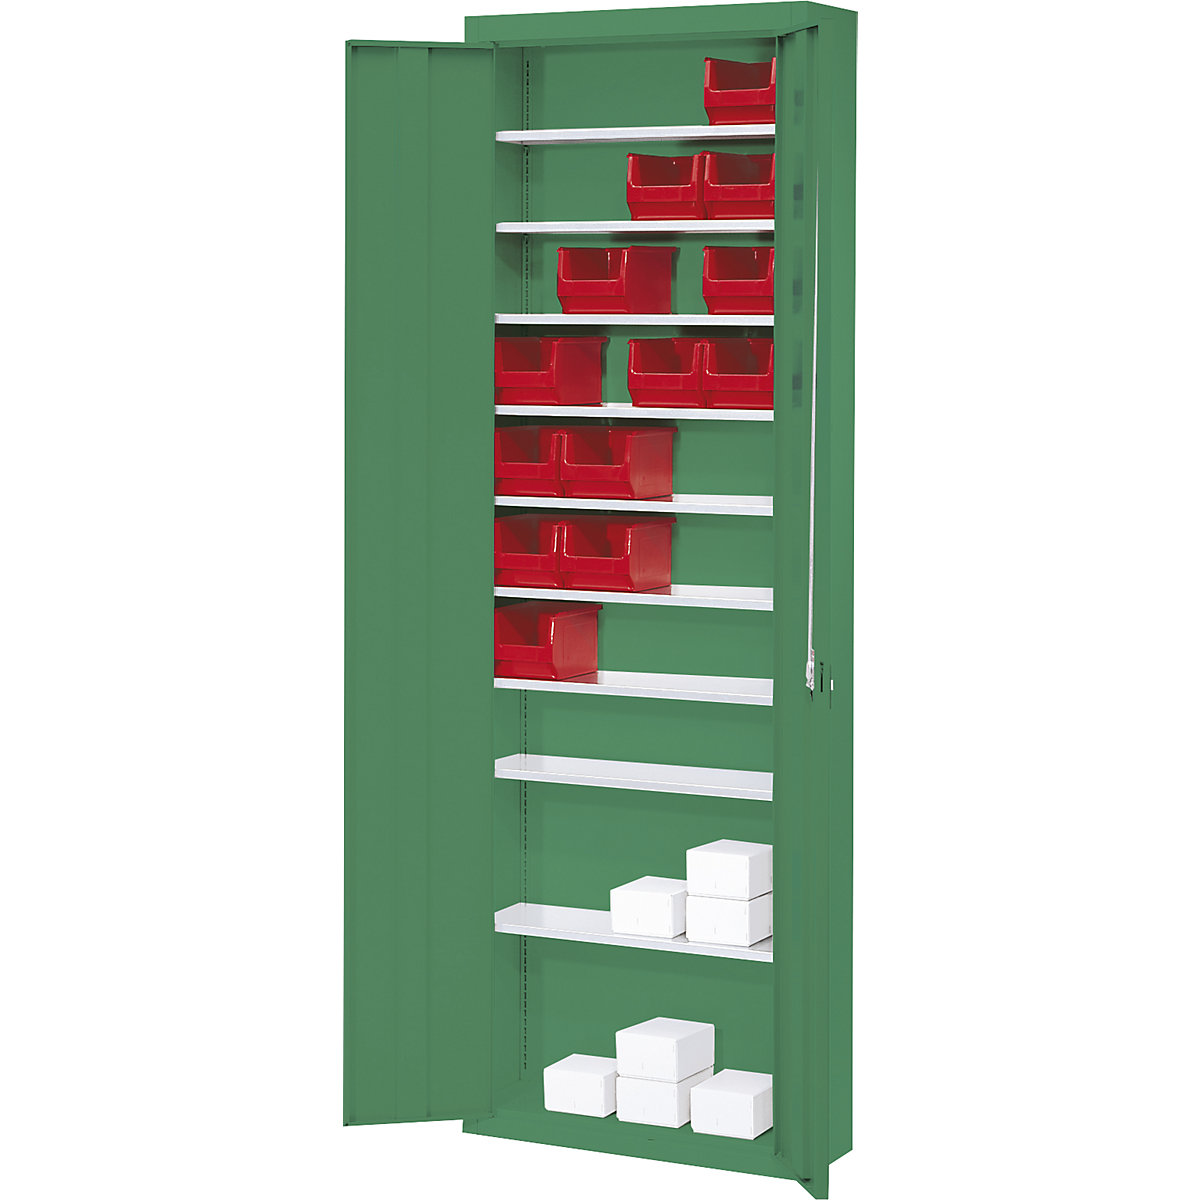 Armario-almacén, sin cajas visualizables – mauser, H x A x P 2150 x 680 x 280 mm, monocolor, verde-7